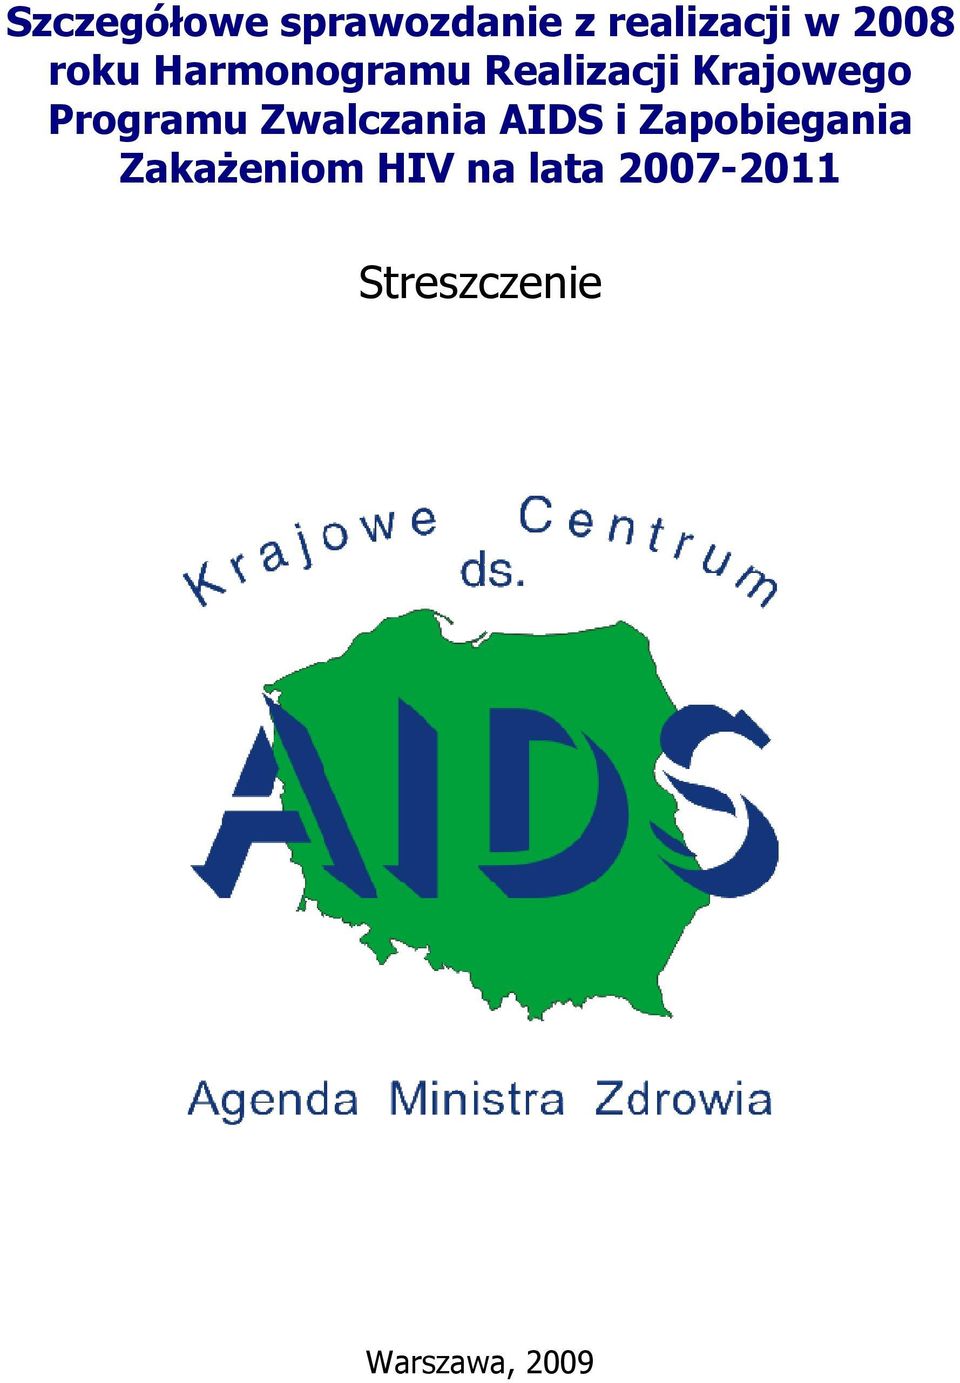 Programu Zwalczania AIDS i Zapobiegania